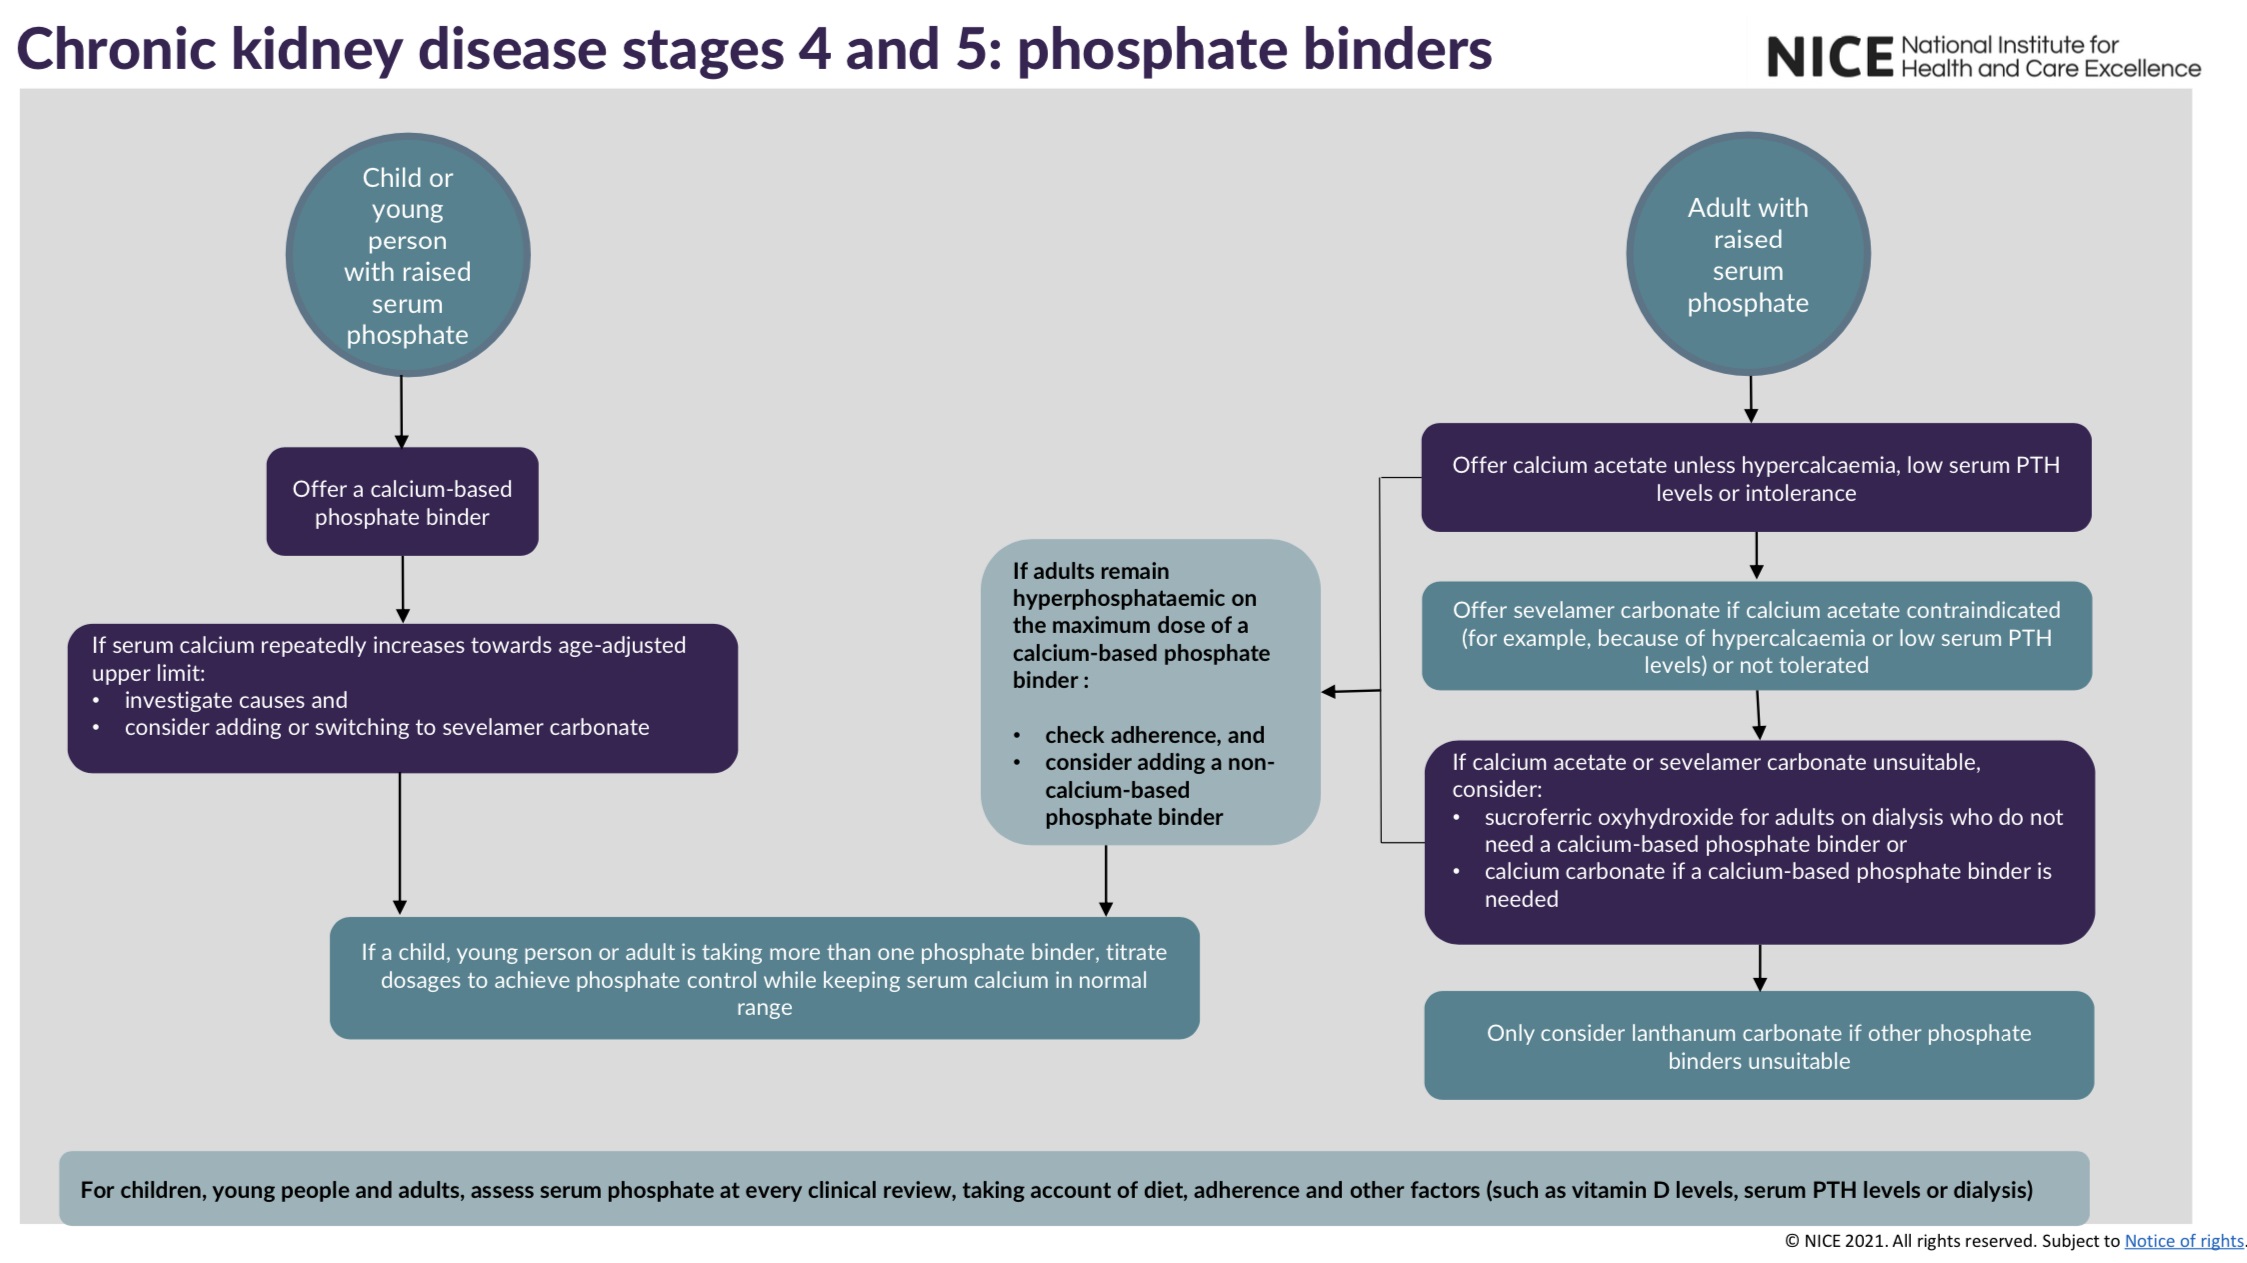 Phosphate binders